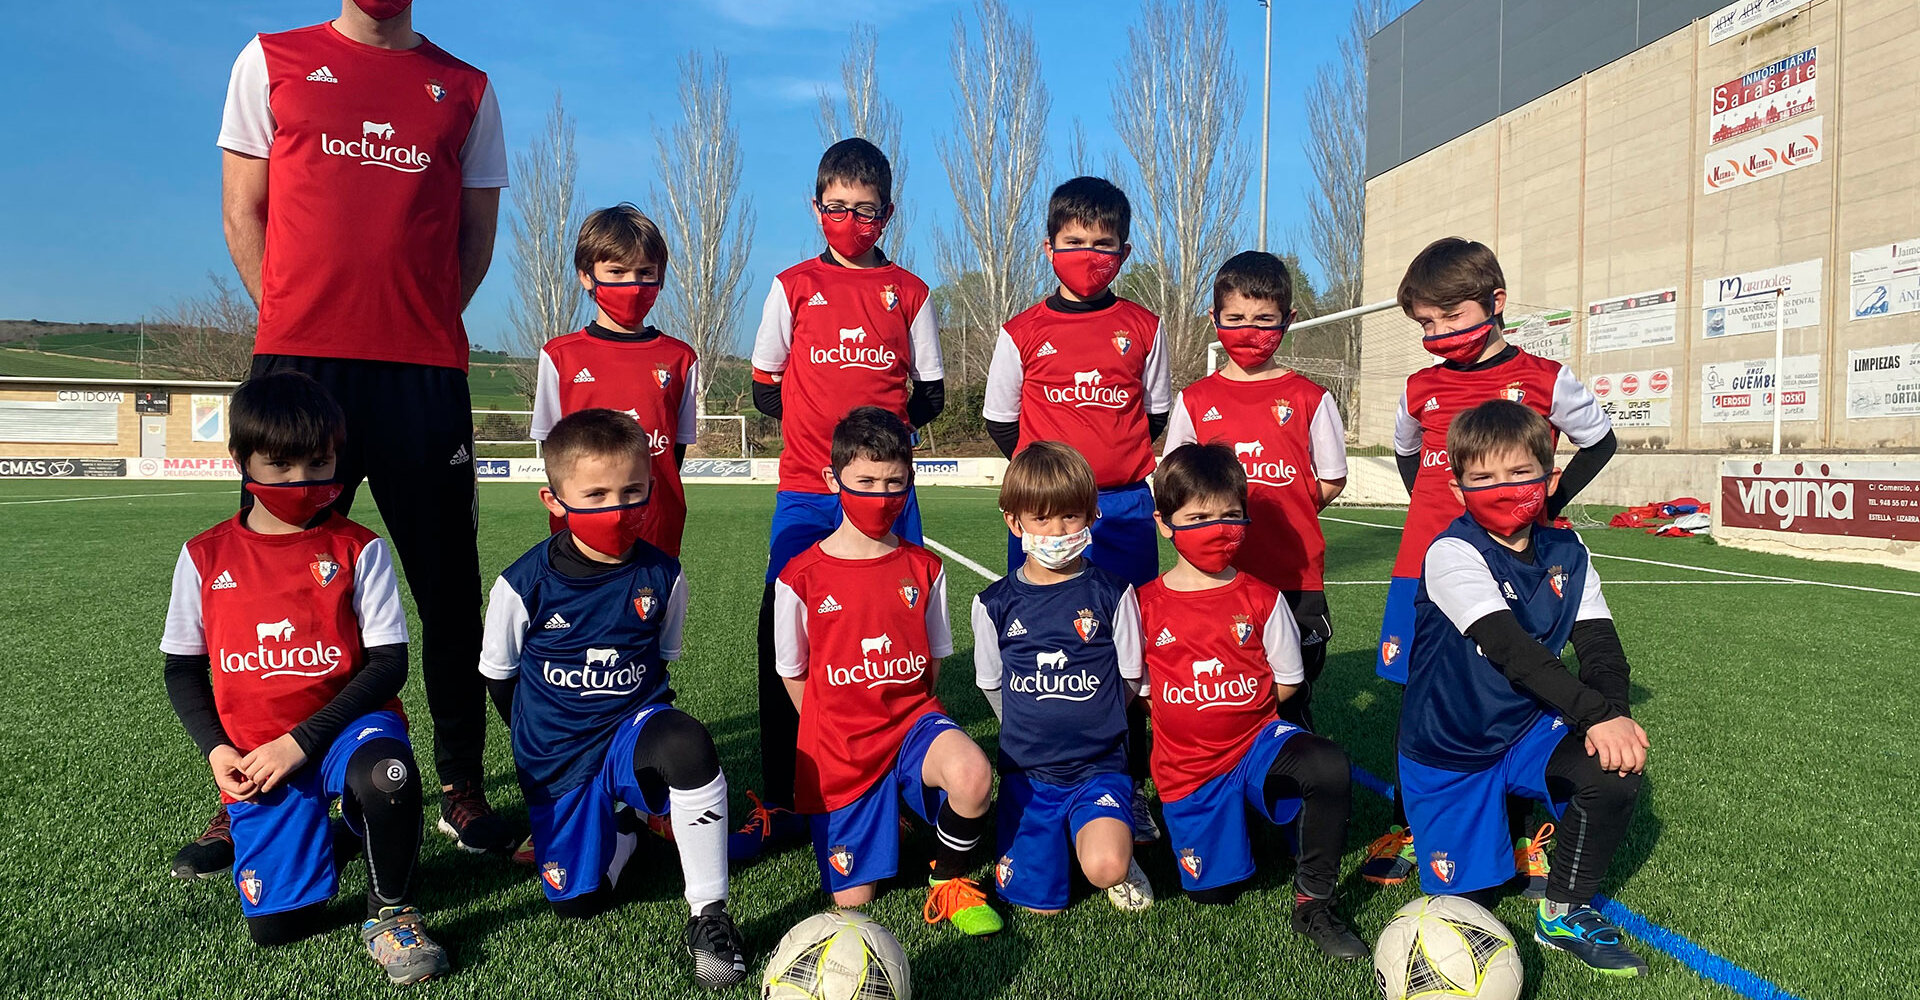 Fundación Osasuna celebra su fiesta final de las escuelas de fútbol el sábado 29 de mayo